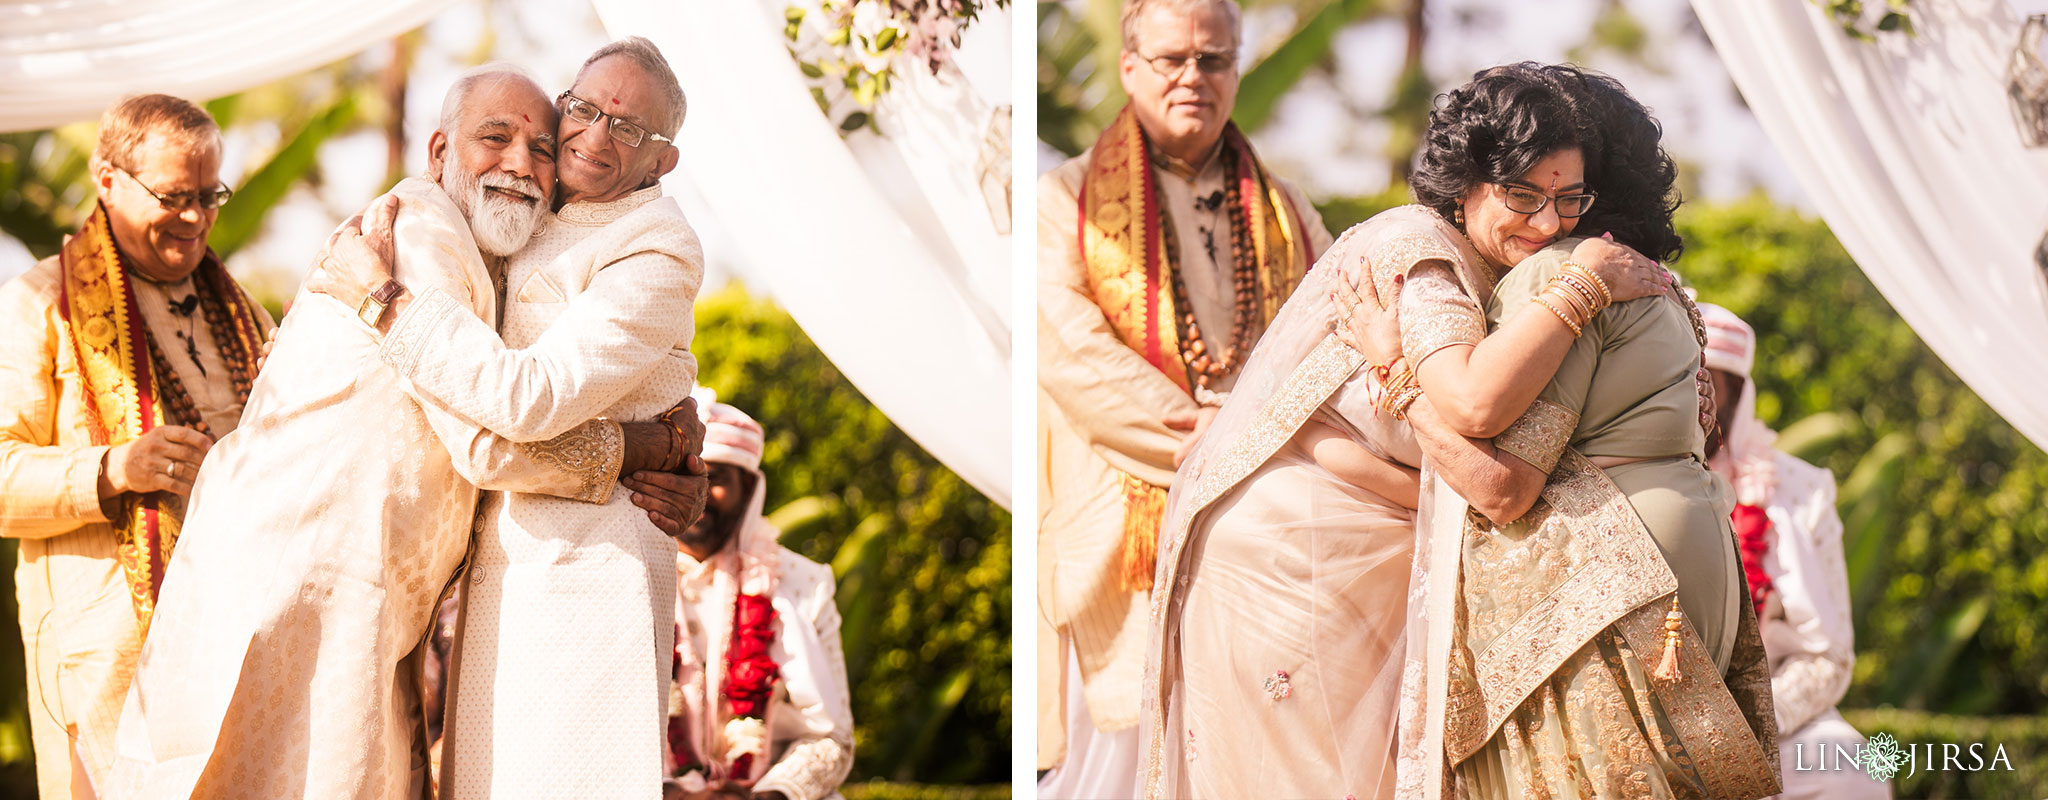 23 Hotel Irvine Indian Wedding Photography